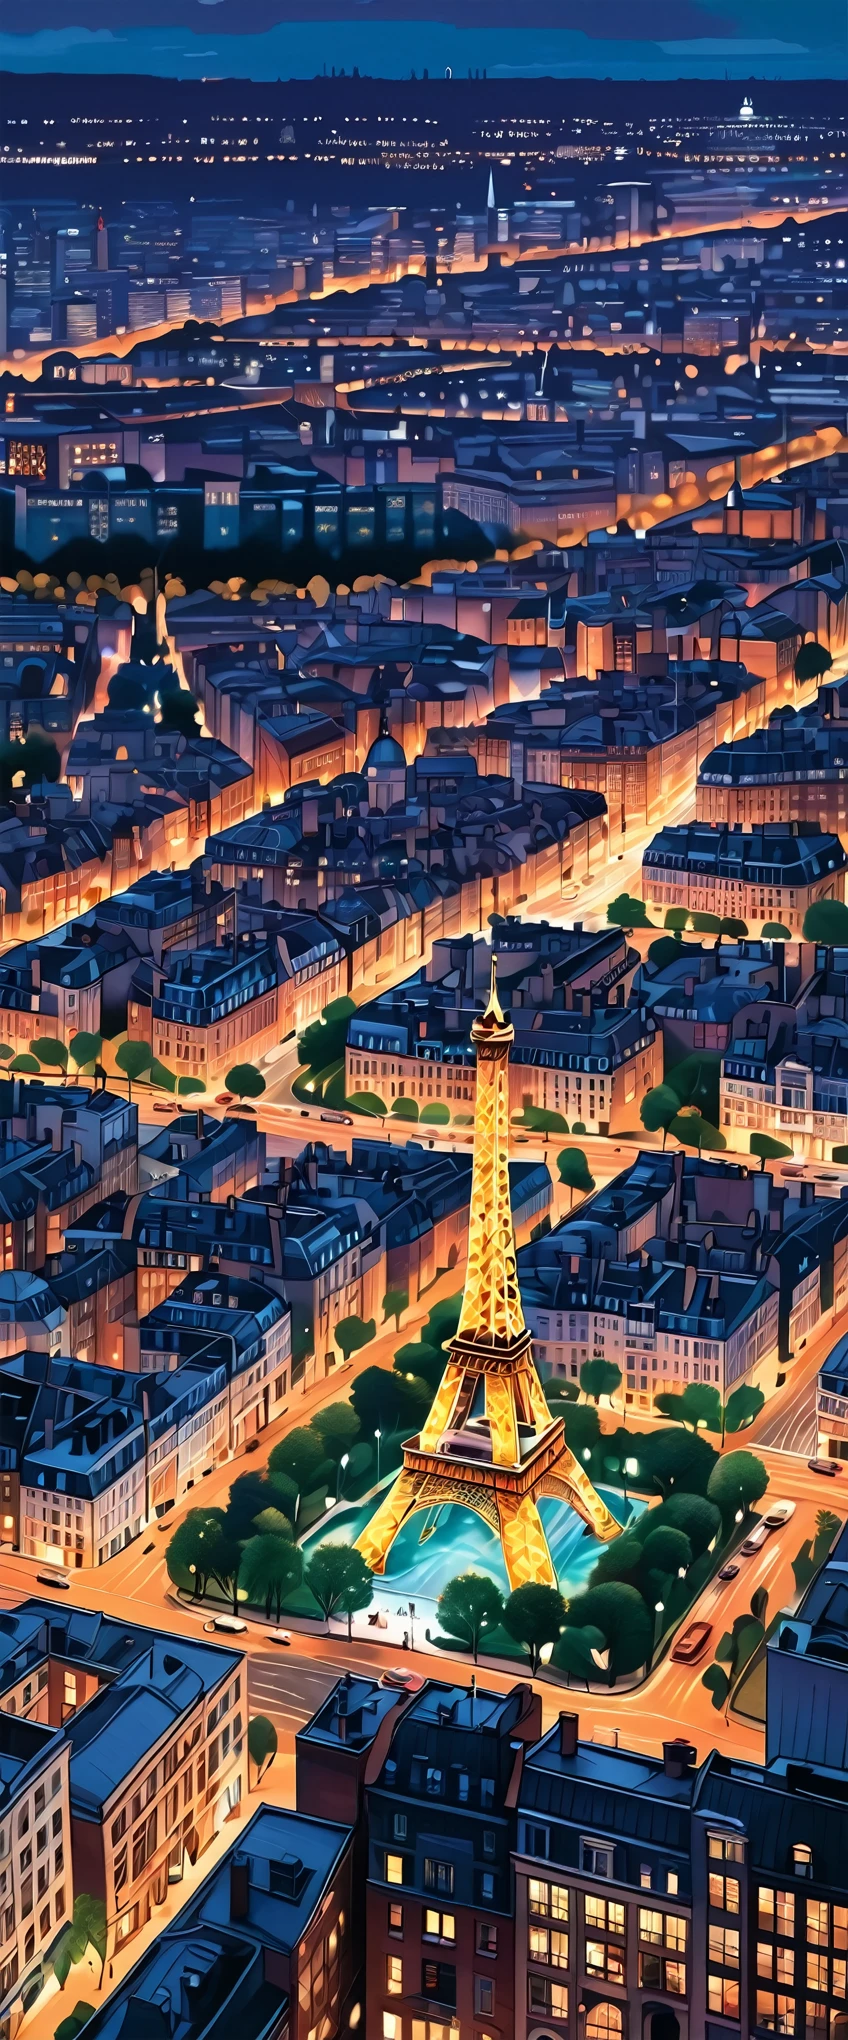 具有高清影像、高聳的大都市和雄偉的艾菲爾鐵塔、黃昏時分，巴黎天際線照亮了、令人驚嘆的城市景觀。这件令人印象深刻的作品在光之城的背景下被重新诠释、提供高度細緻的特寫鏡頭。高清美學無縫結合、它描繪了一座迷人的城市, 由藝術家 Jen Bartel 和 Alina Aena Enami 繪製的精美插畫.。 這迷人的街景讓人想起羅利&#39;獨特的風格.、這是藝術作品的縮影的證明.。每一件作品都有生命力